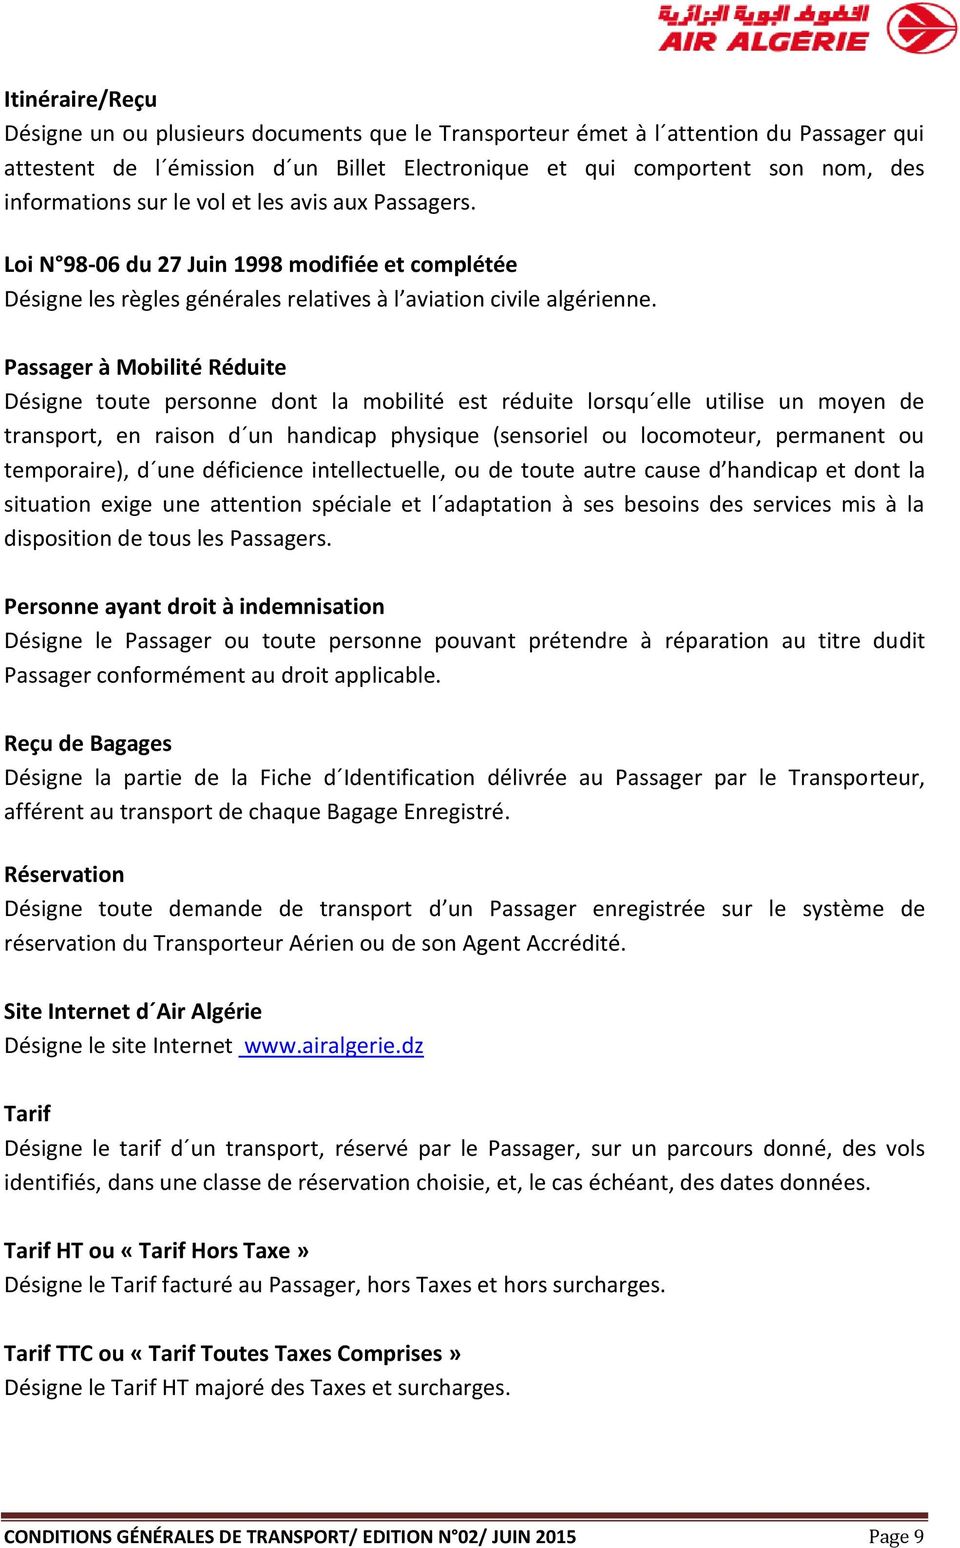 CONDITIONS GÉNÉRALES DE TRANSPORT D AIR ALGERIE - PDF Free Download